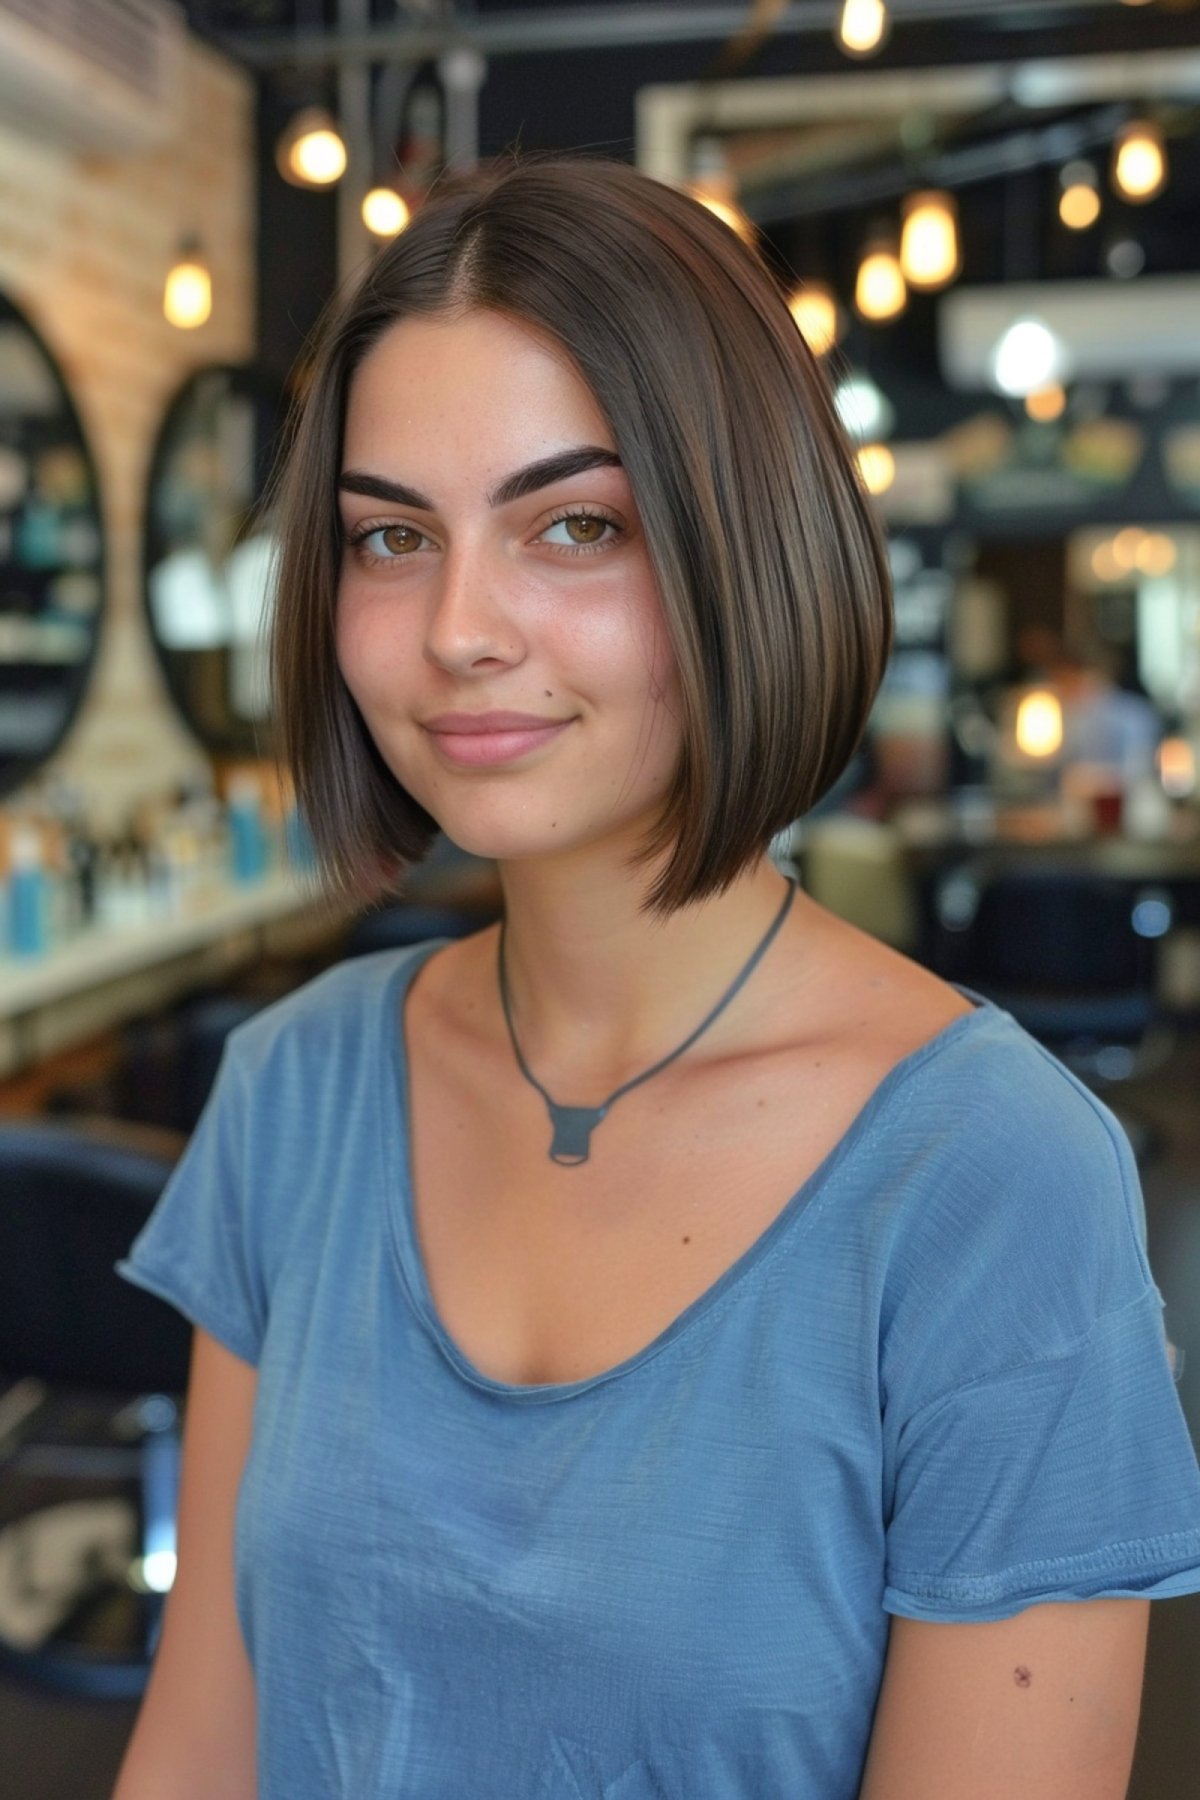 Young Woman with Sleek Chin-Length Chanel Bob Haircut